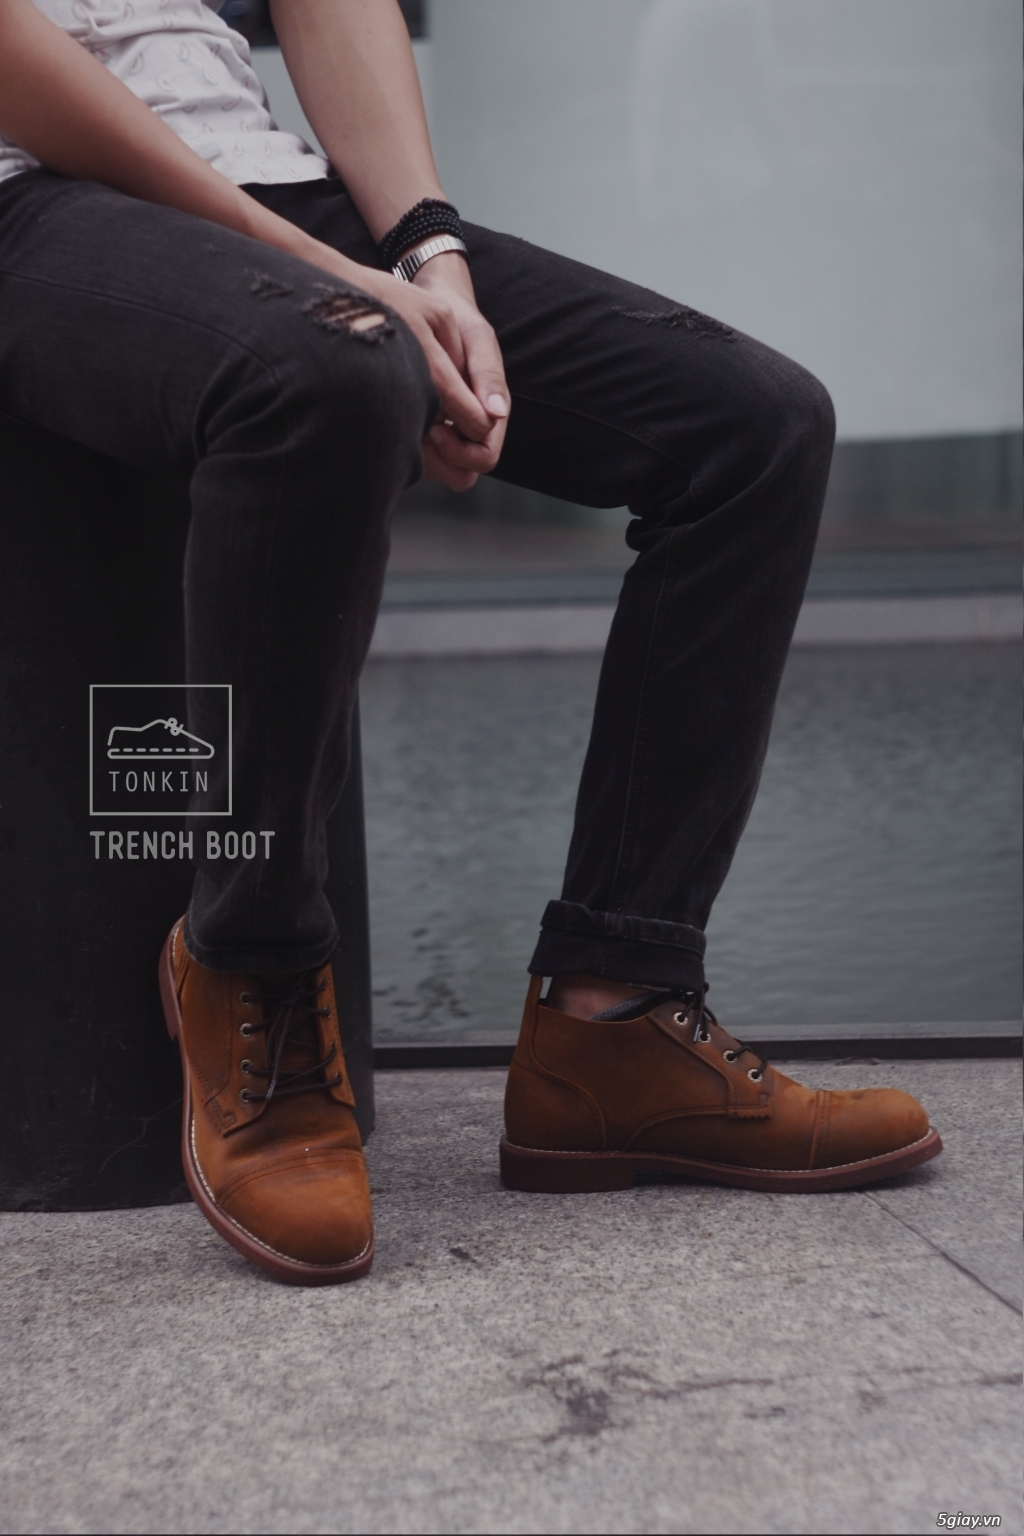 Giày Nam Tonkin - Chuyên về các sản phẩm về giày Redwing - 0969709940 - 22